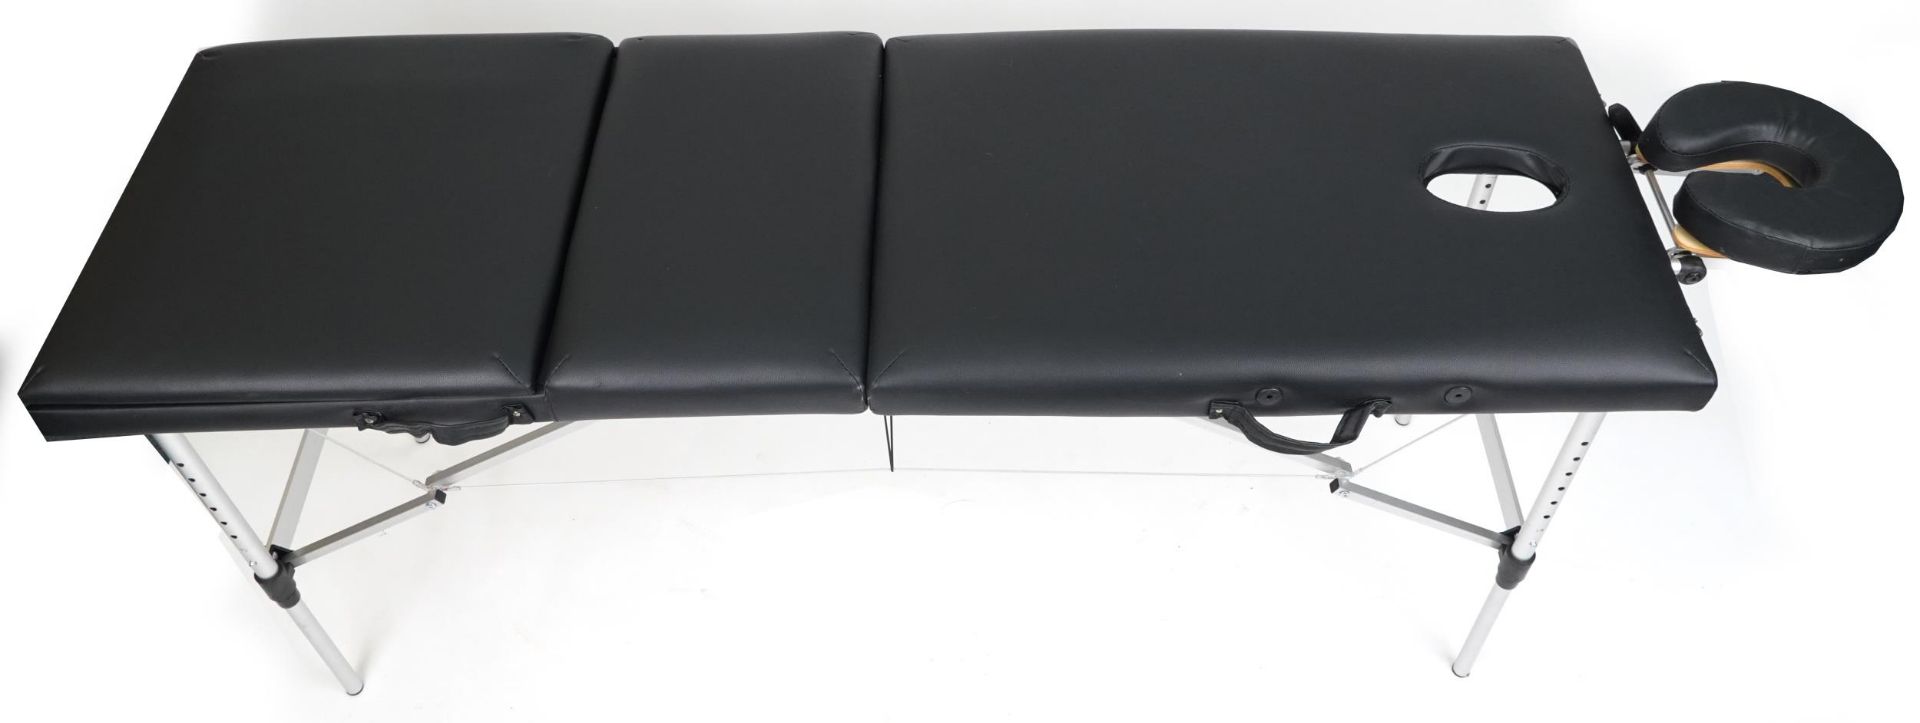 Folding aluminium and black leatherette massage table with protective bag, 83cm H x 184cm W x 59cm D - Bild 3 aus 6